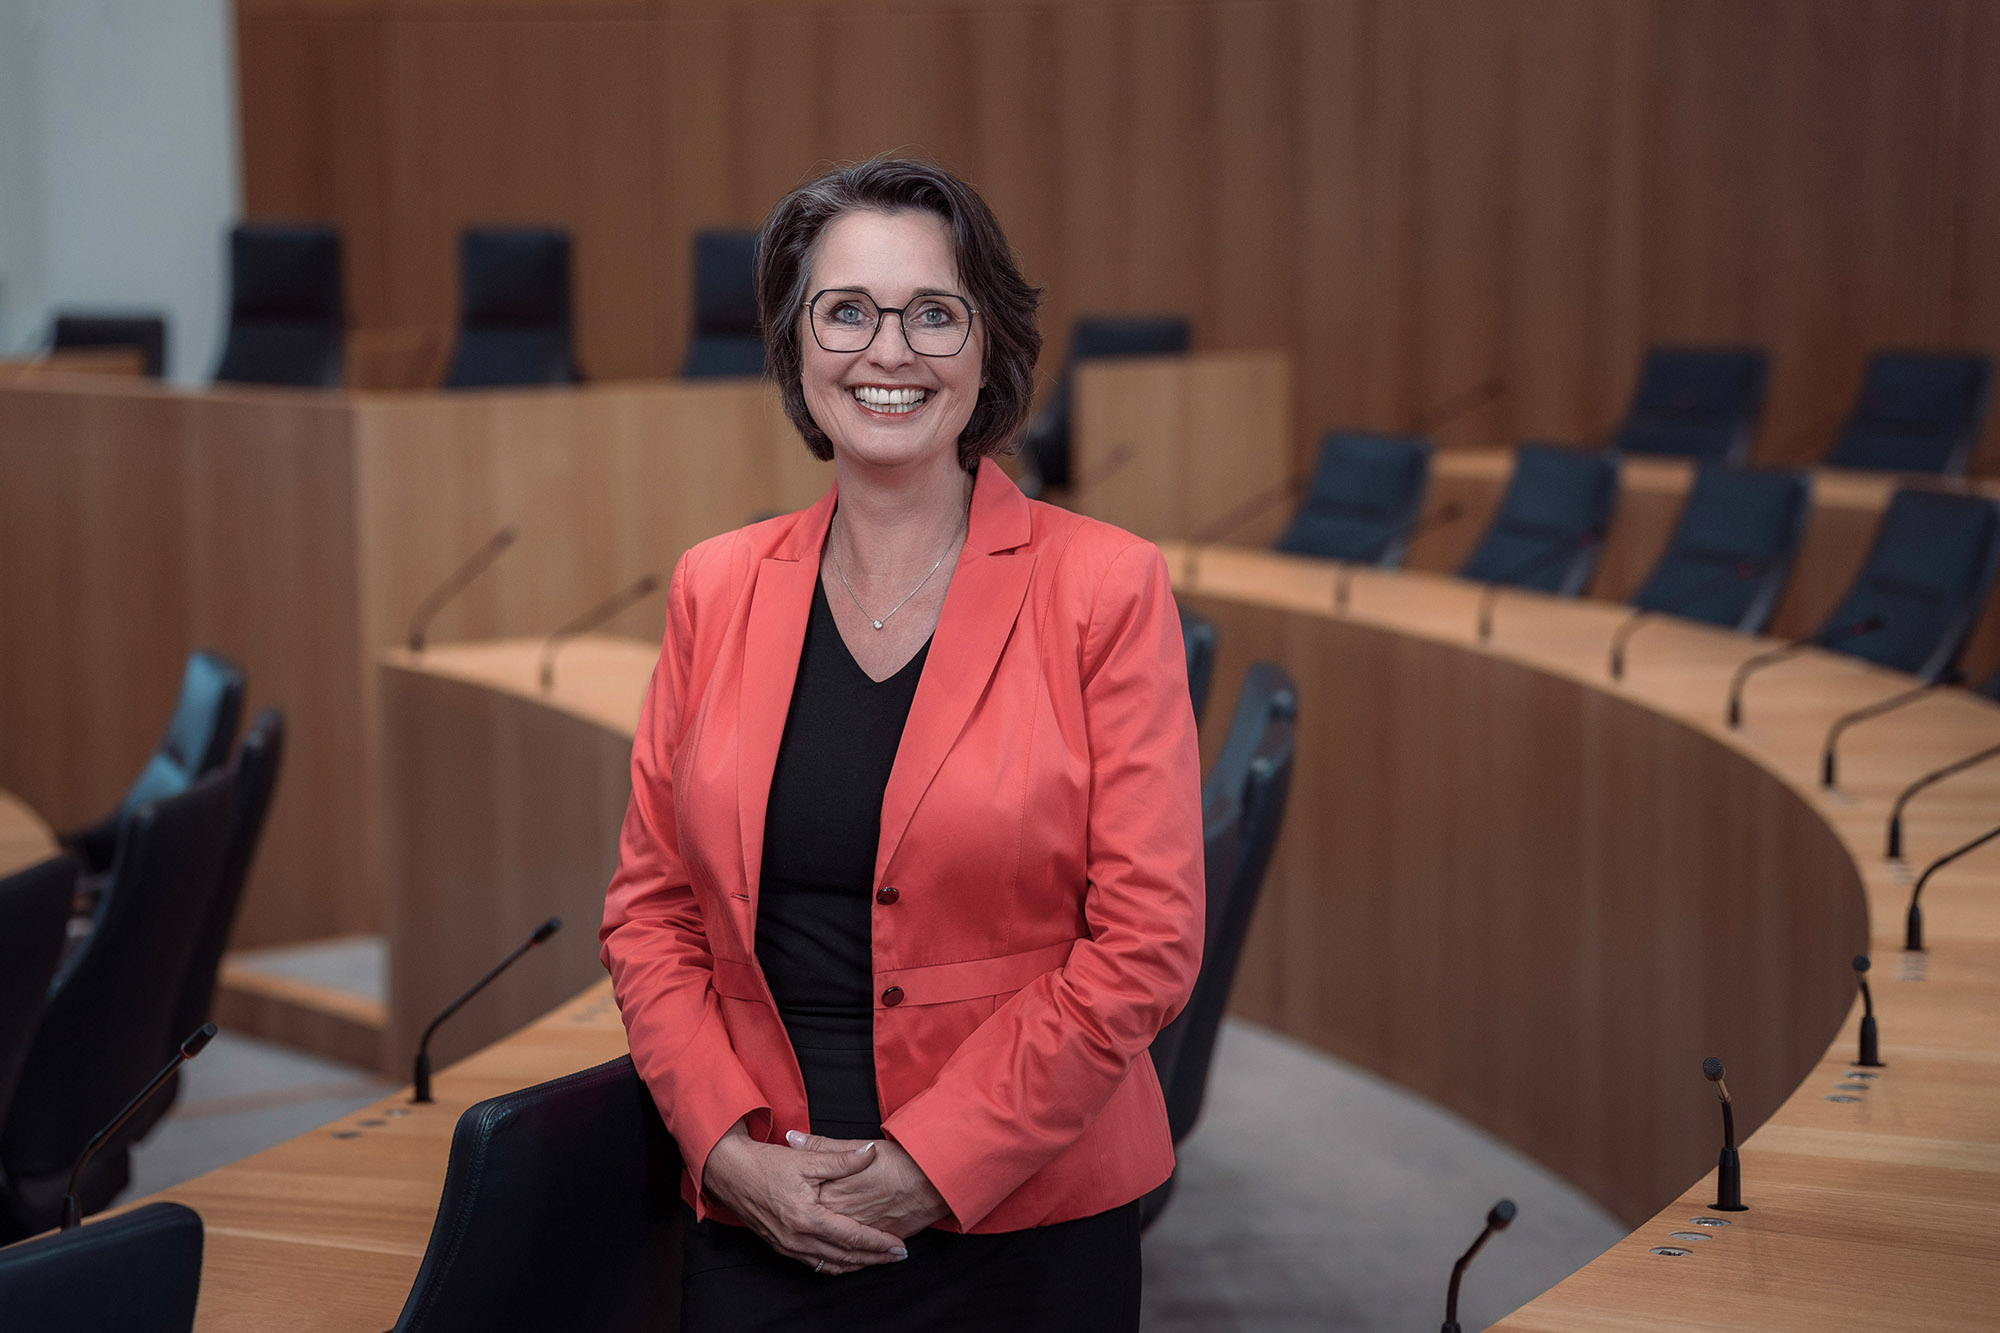 Die Vizepräsidentin des Landtags Rheinland-Pfalz, Kathrin Anklam-Trapp. Das Foto ist horizontal ausgerichtet. Die Vizepräsidentin steht lächelnd zwischen den Stuhlreihen des Plenarsaals.